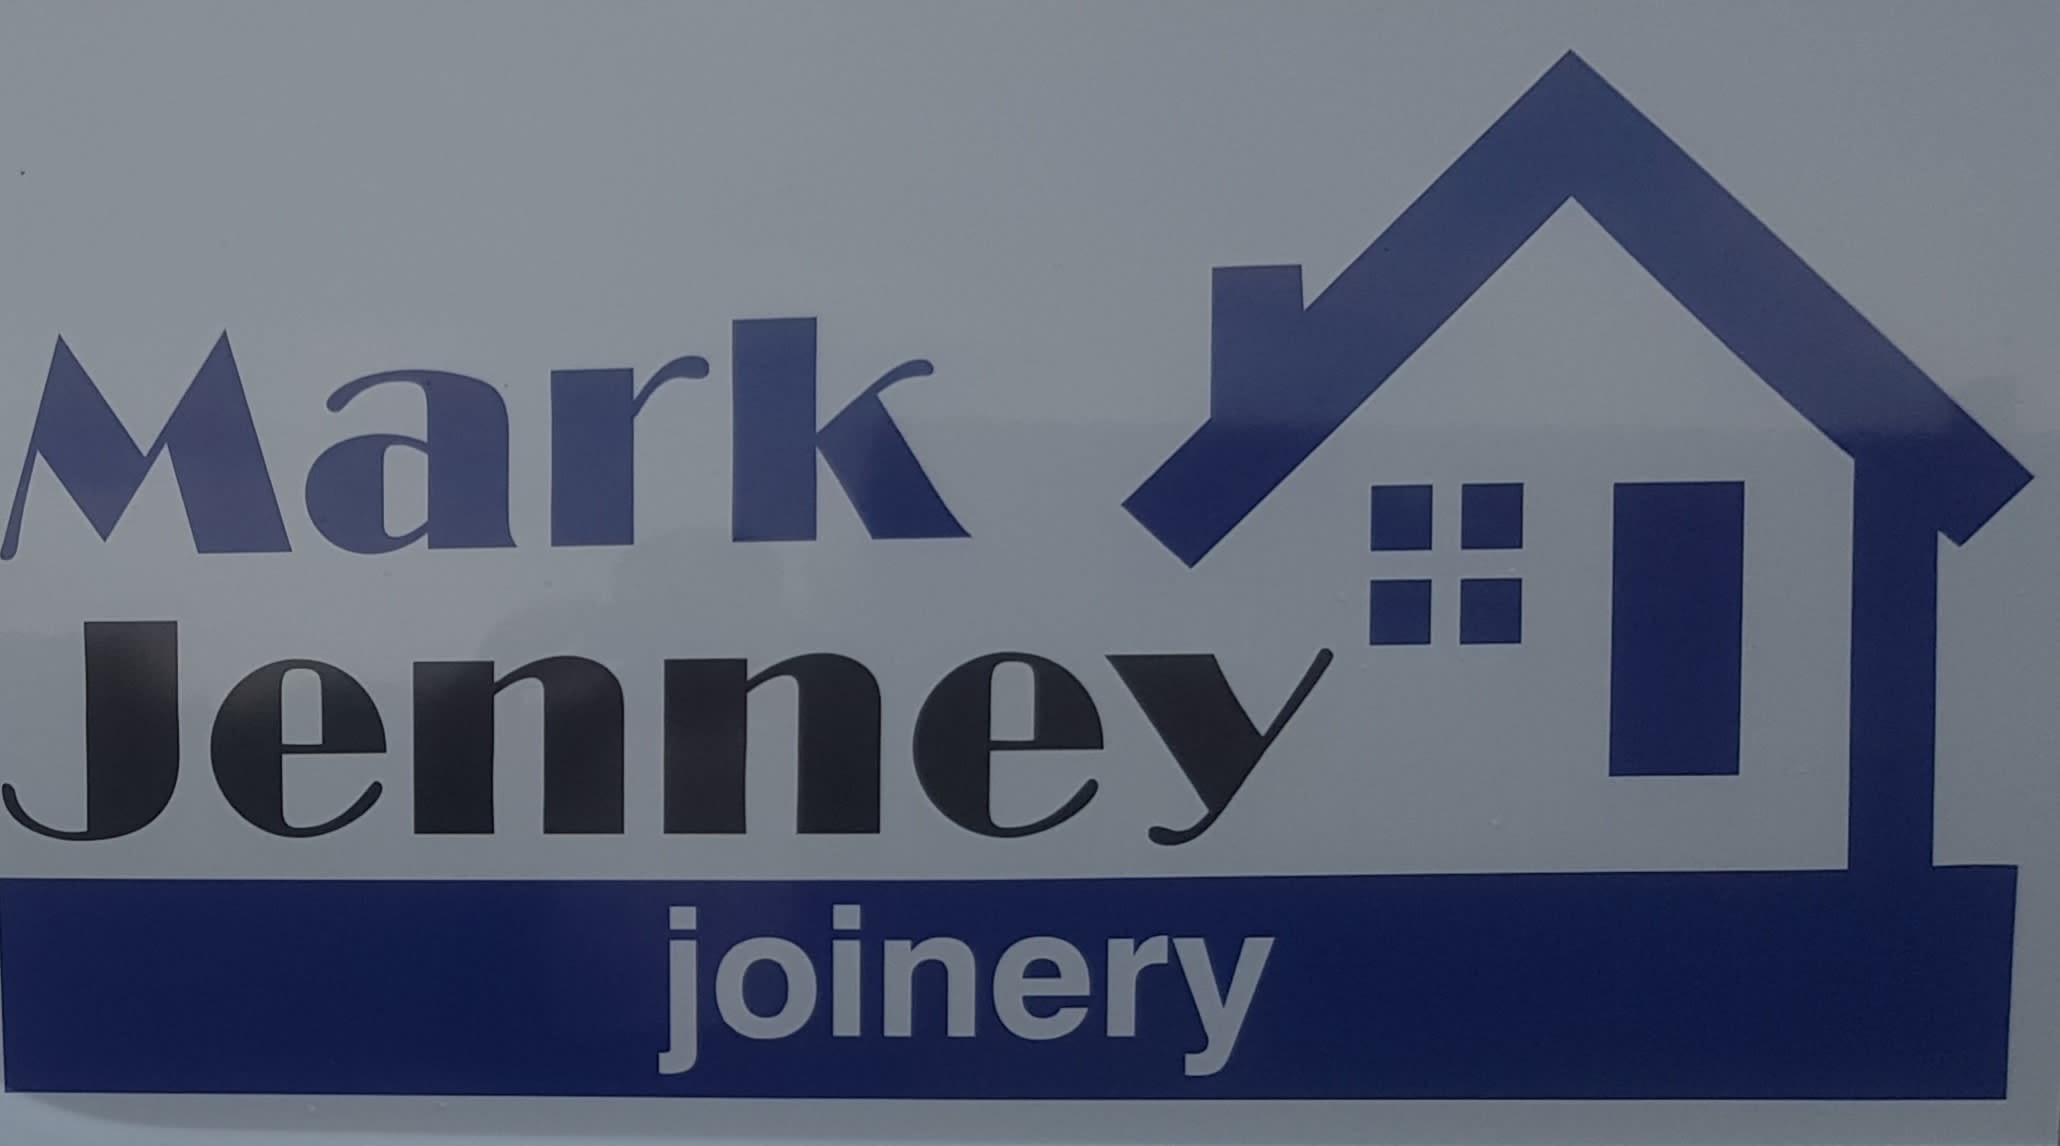 Mark Jenney Joinery